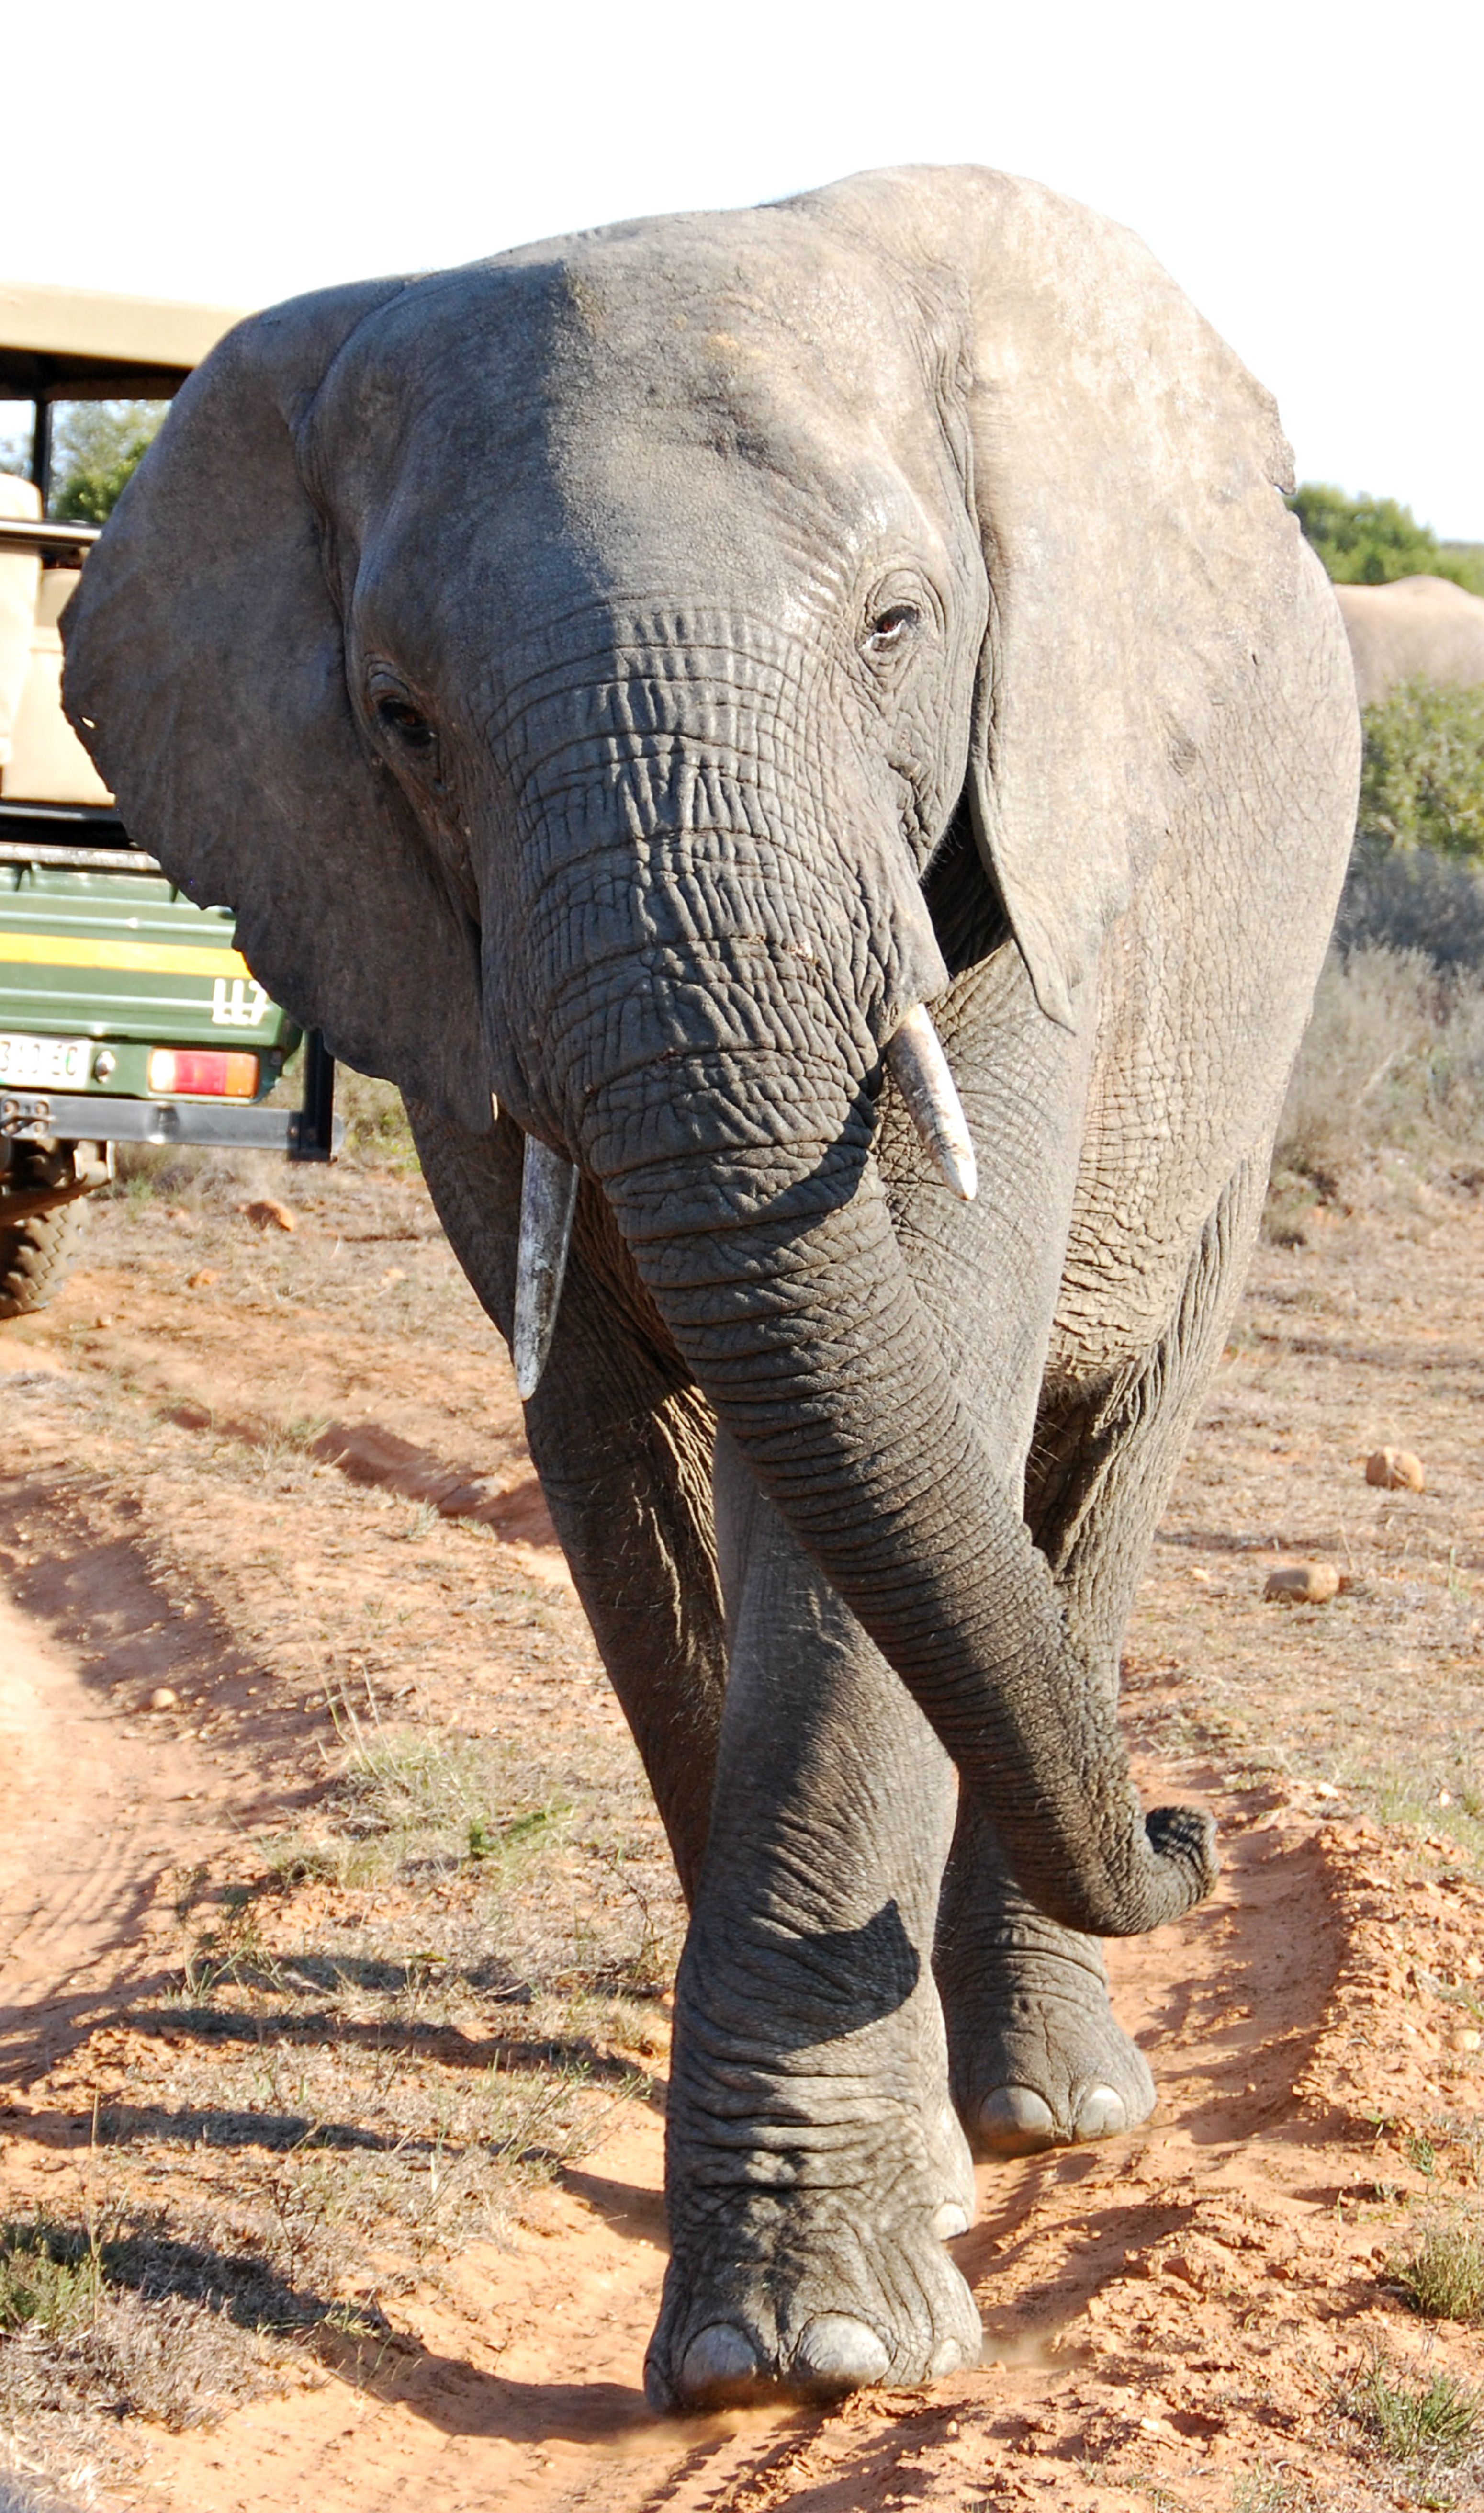 South Africa elephant (Meg 257) | Elephants | Pinterest | South ...